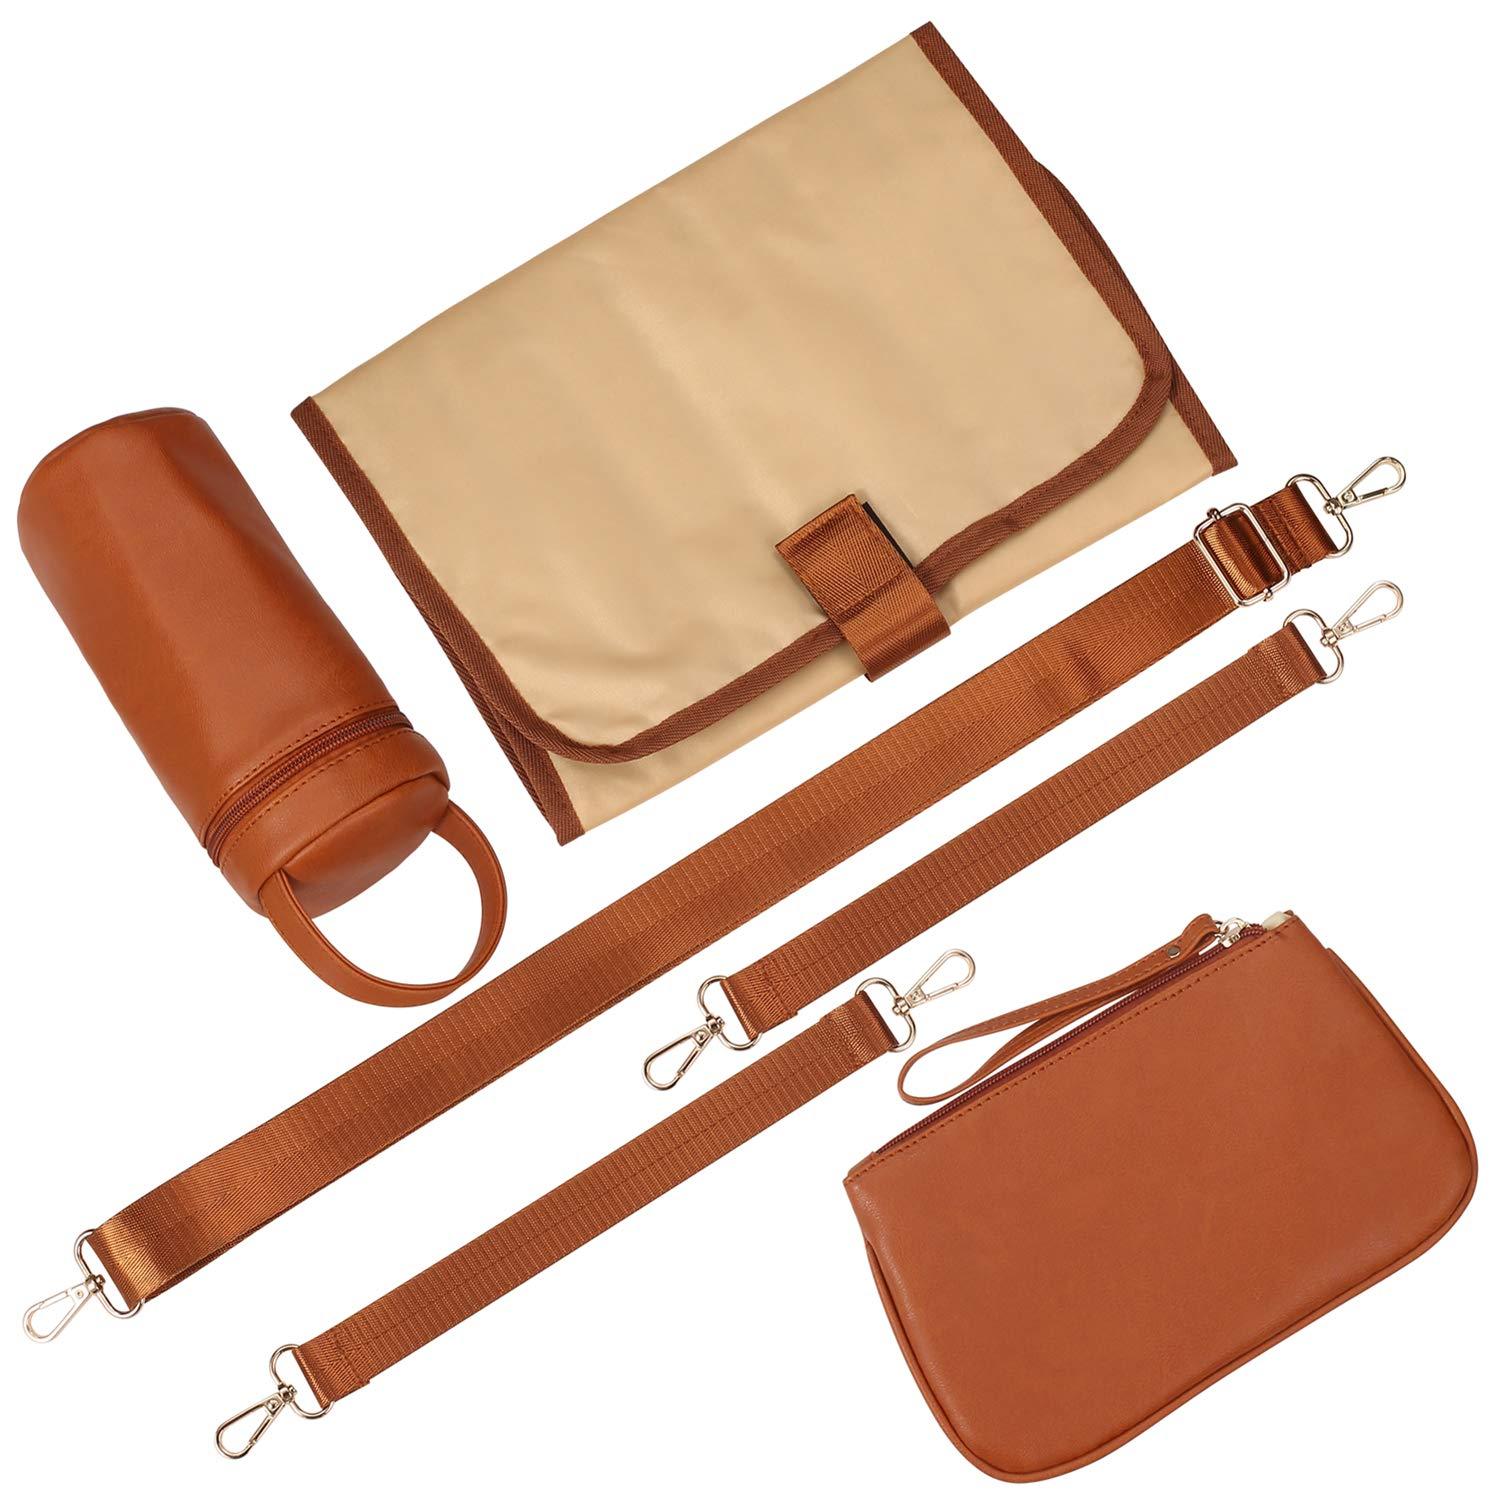 Sac maman-bébé Athena en cuir original 👍🏻✓ 3 pieces Athena Leather Care  Bag est conçu pour répondre aux besoins des mères qui préfèrent a…